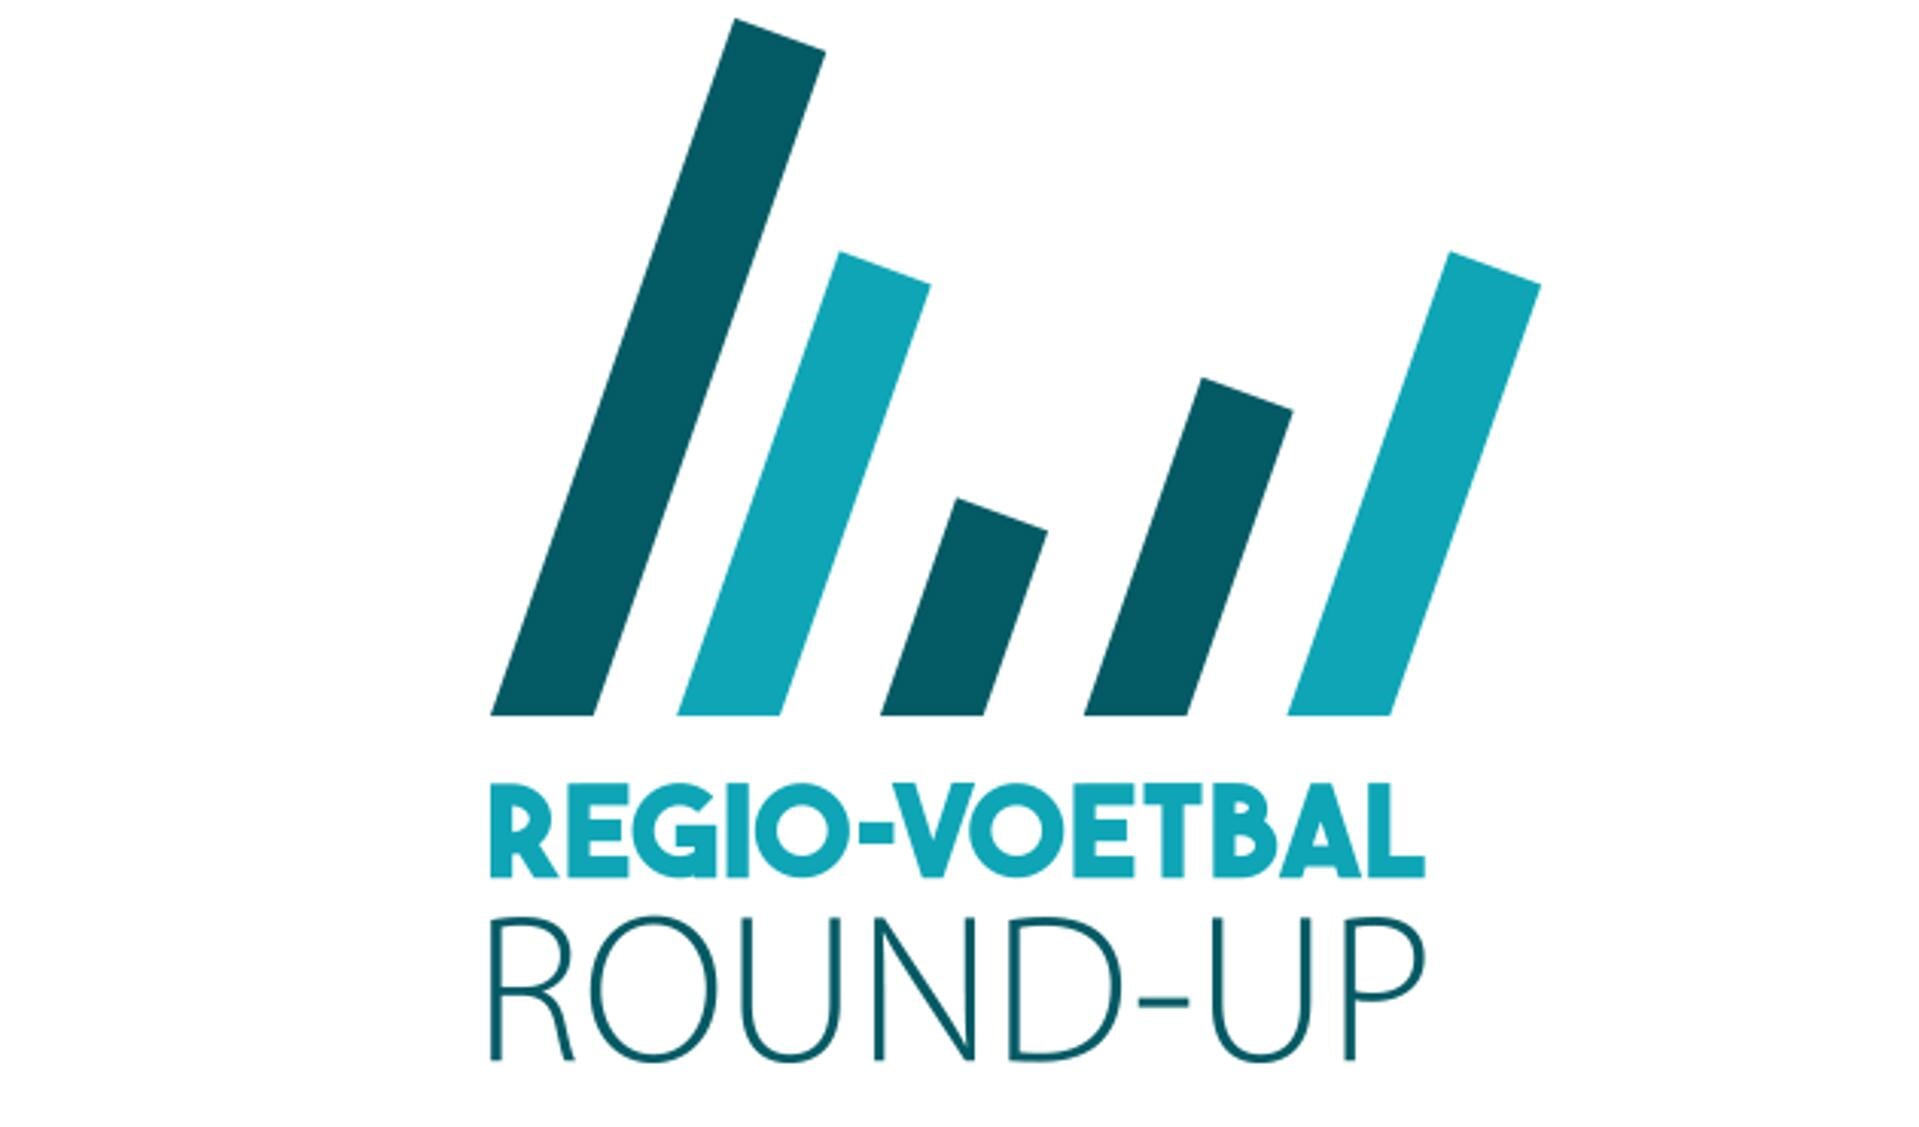 RV Round-Up #17: Almkerk na ruim jaar weer onderuit, zeven goals voor Venderbos